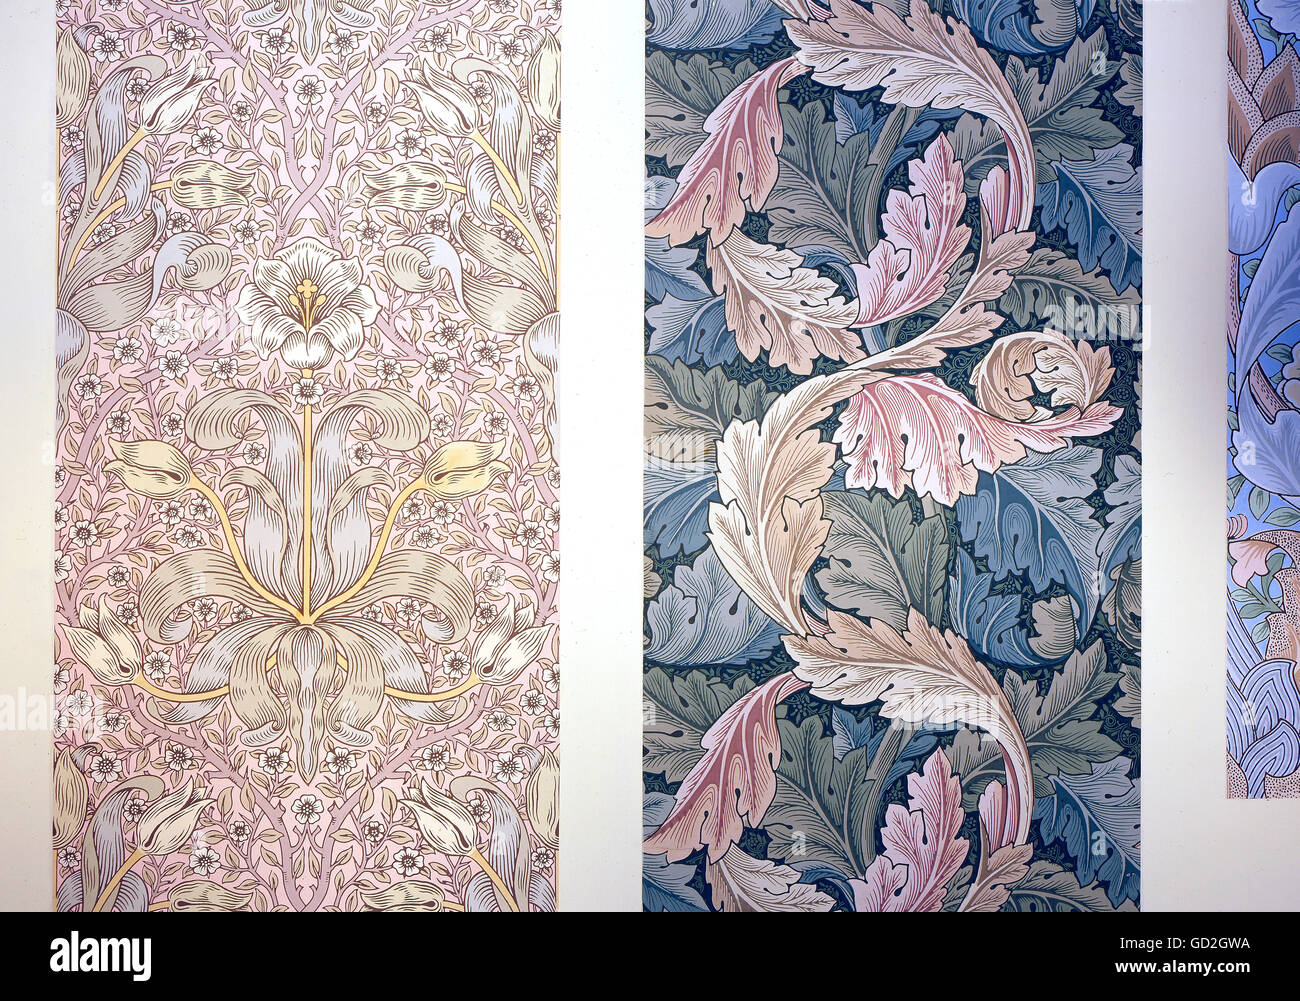 Beaux-arts, Morris, William (1834 - 1896), papier peint, deux modèles de fleurs d'acanthe et, vers 1880, Musée du Papier Peint allemand, Kassel, Allemagne, l'artiste n'a pas d'auteur pour être effacé Banque D'Images